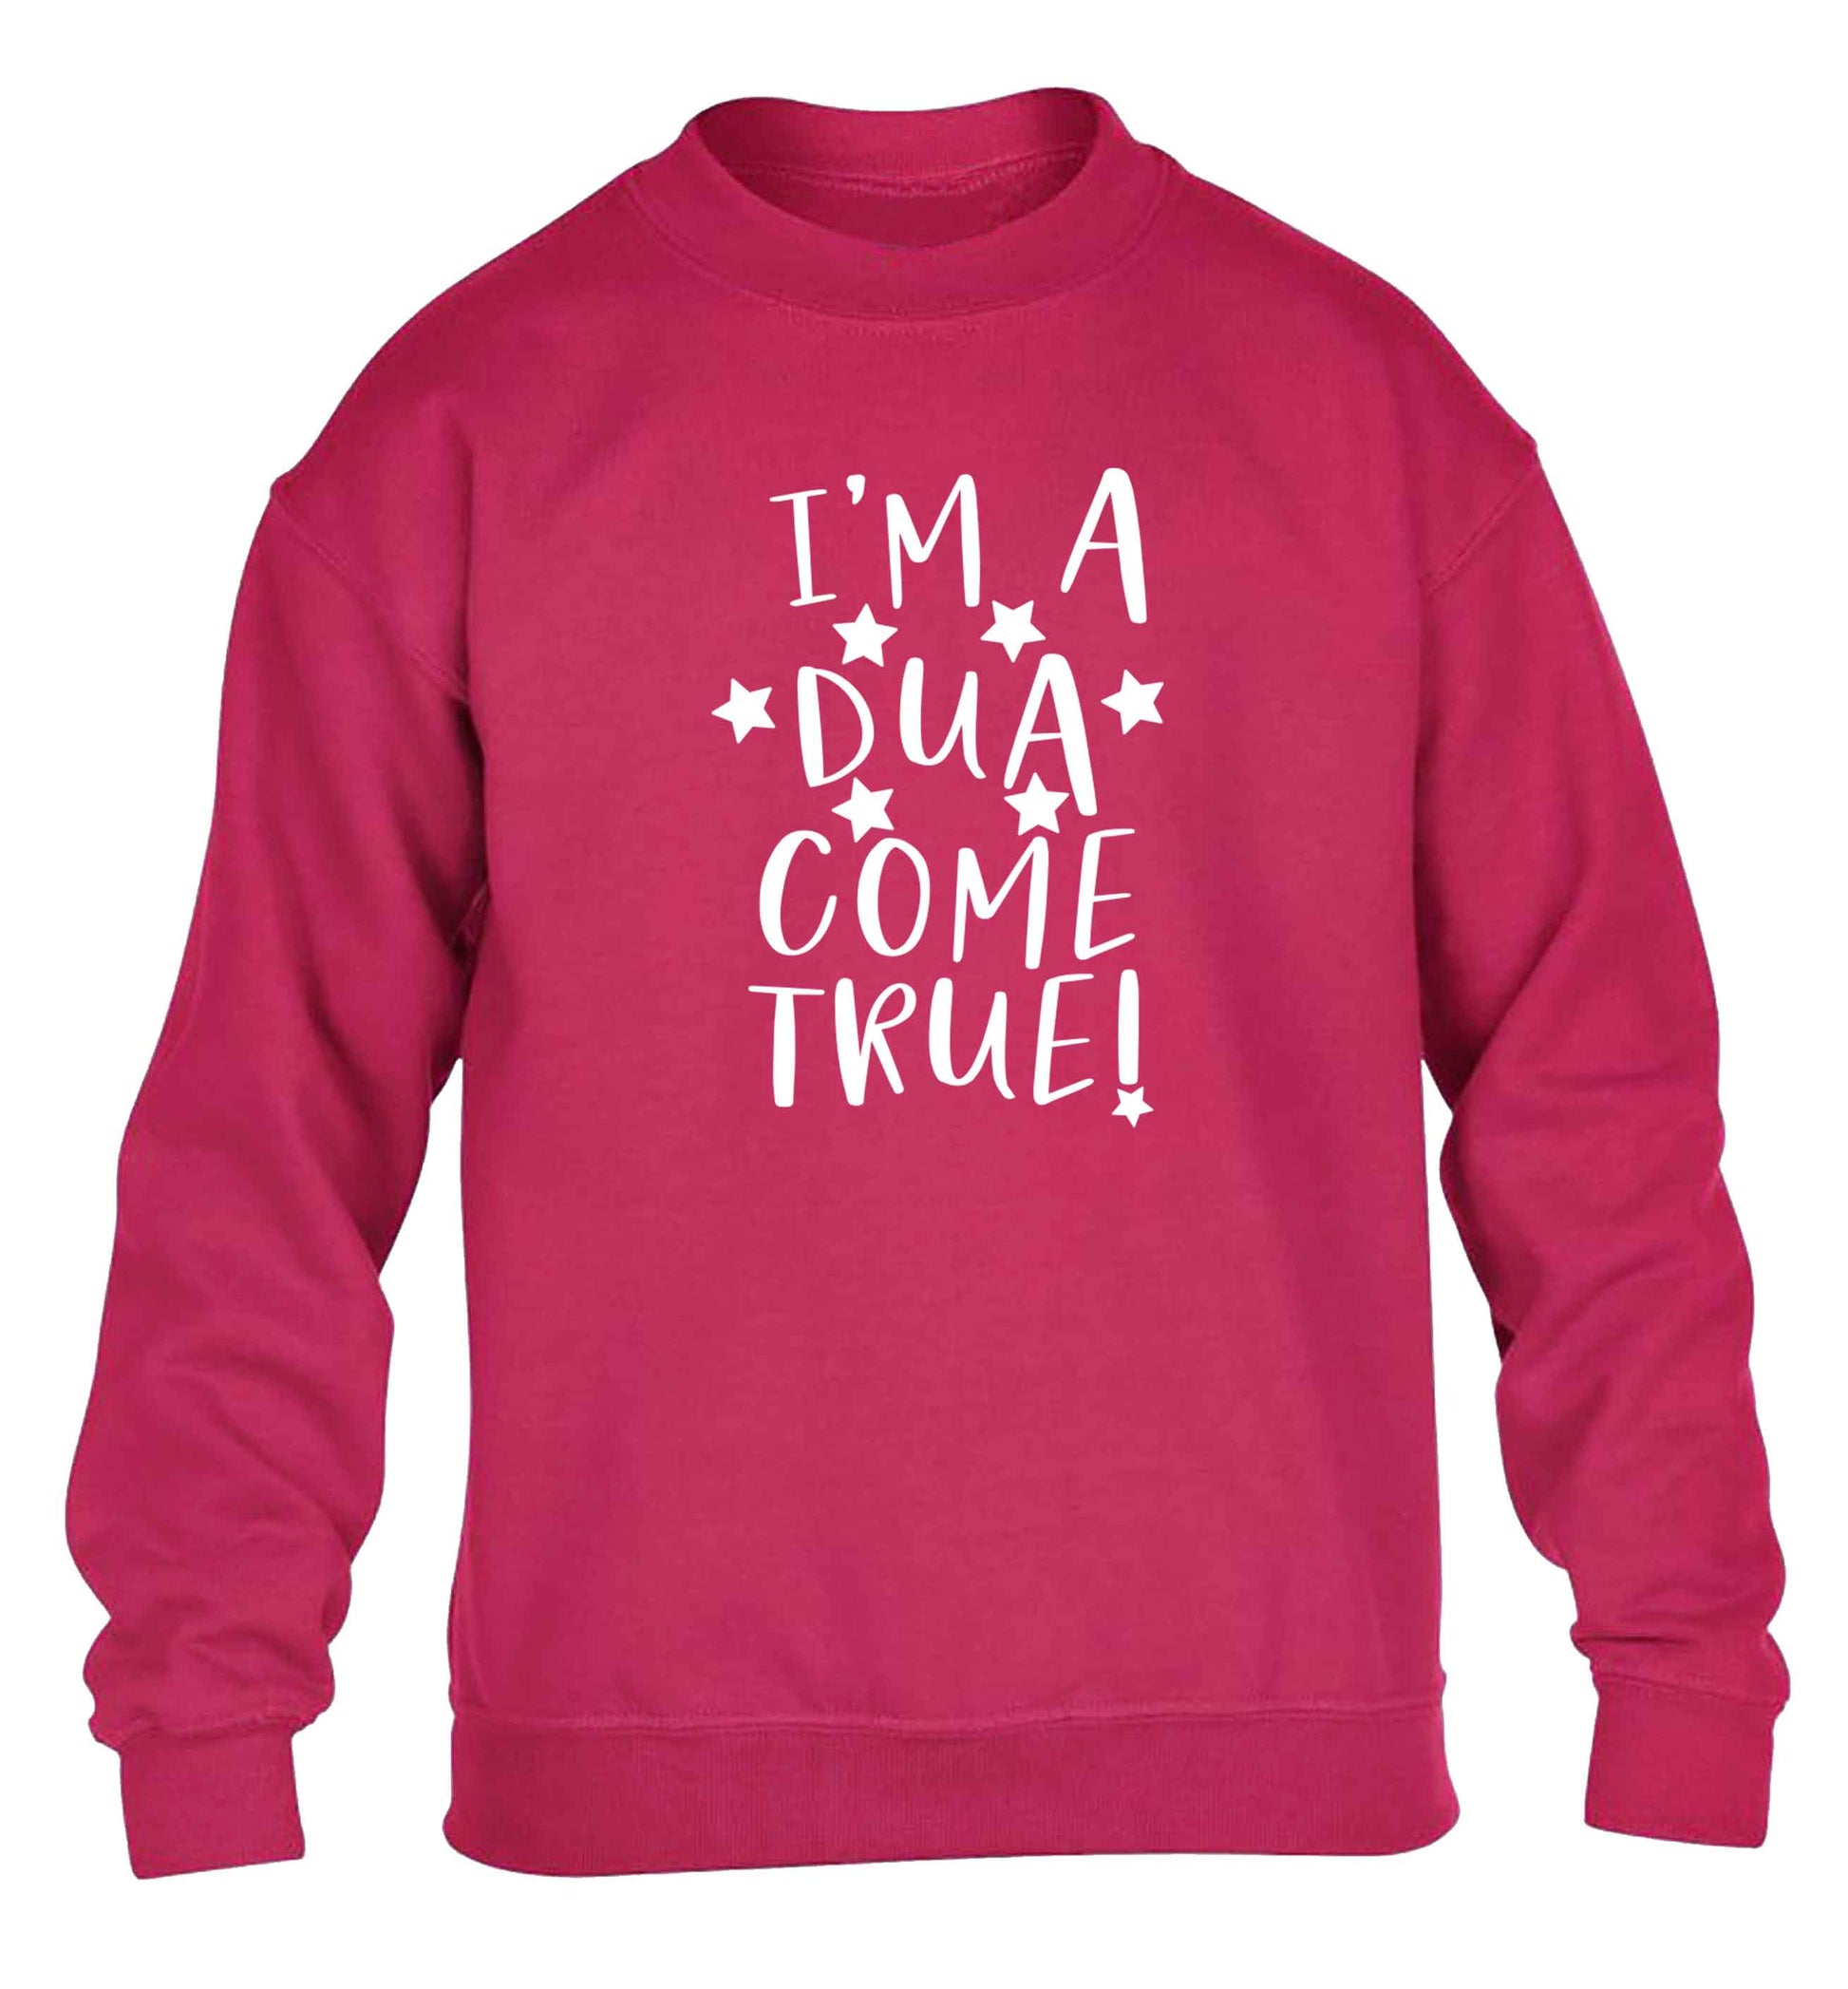 I'm a dua come true children's pink sweater 12-13 Years